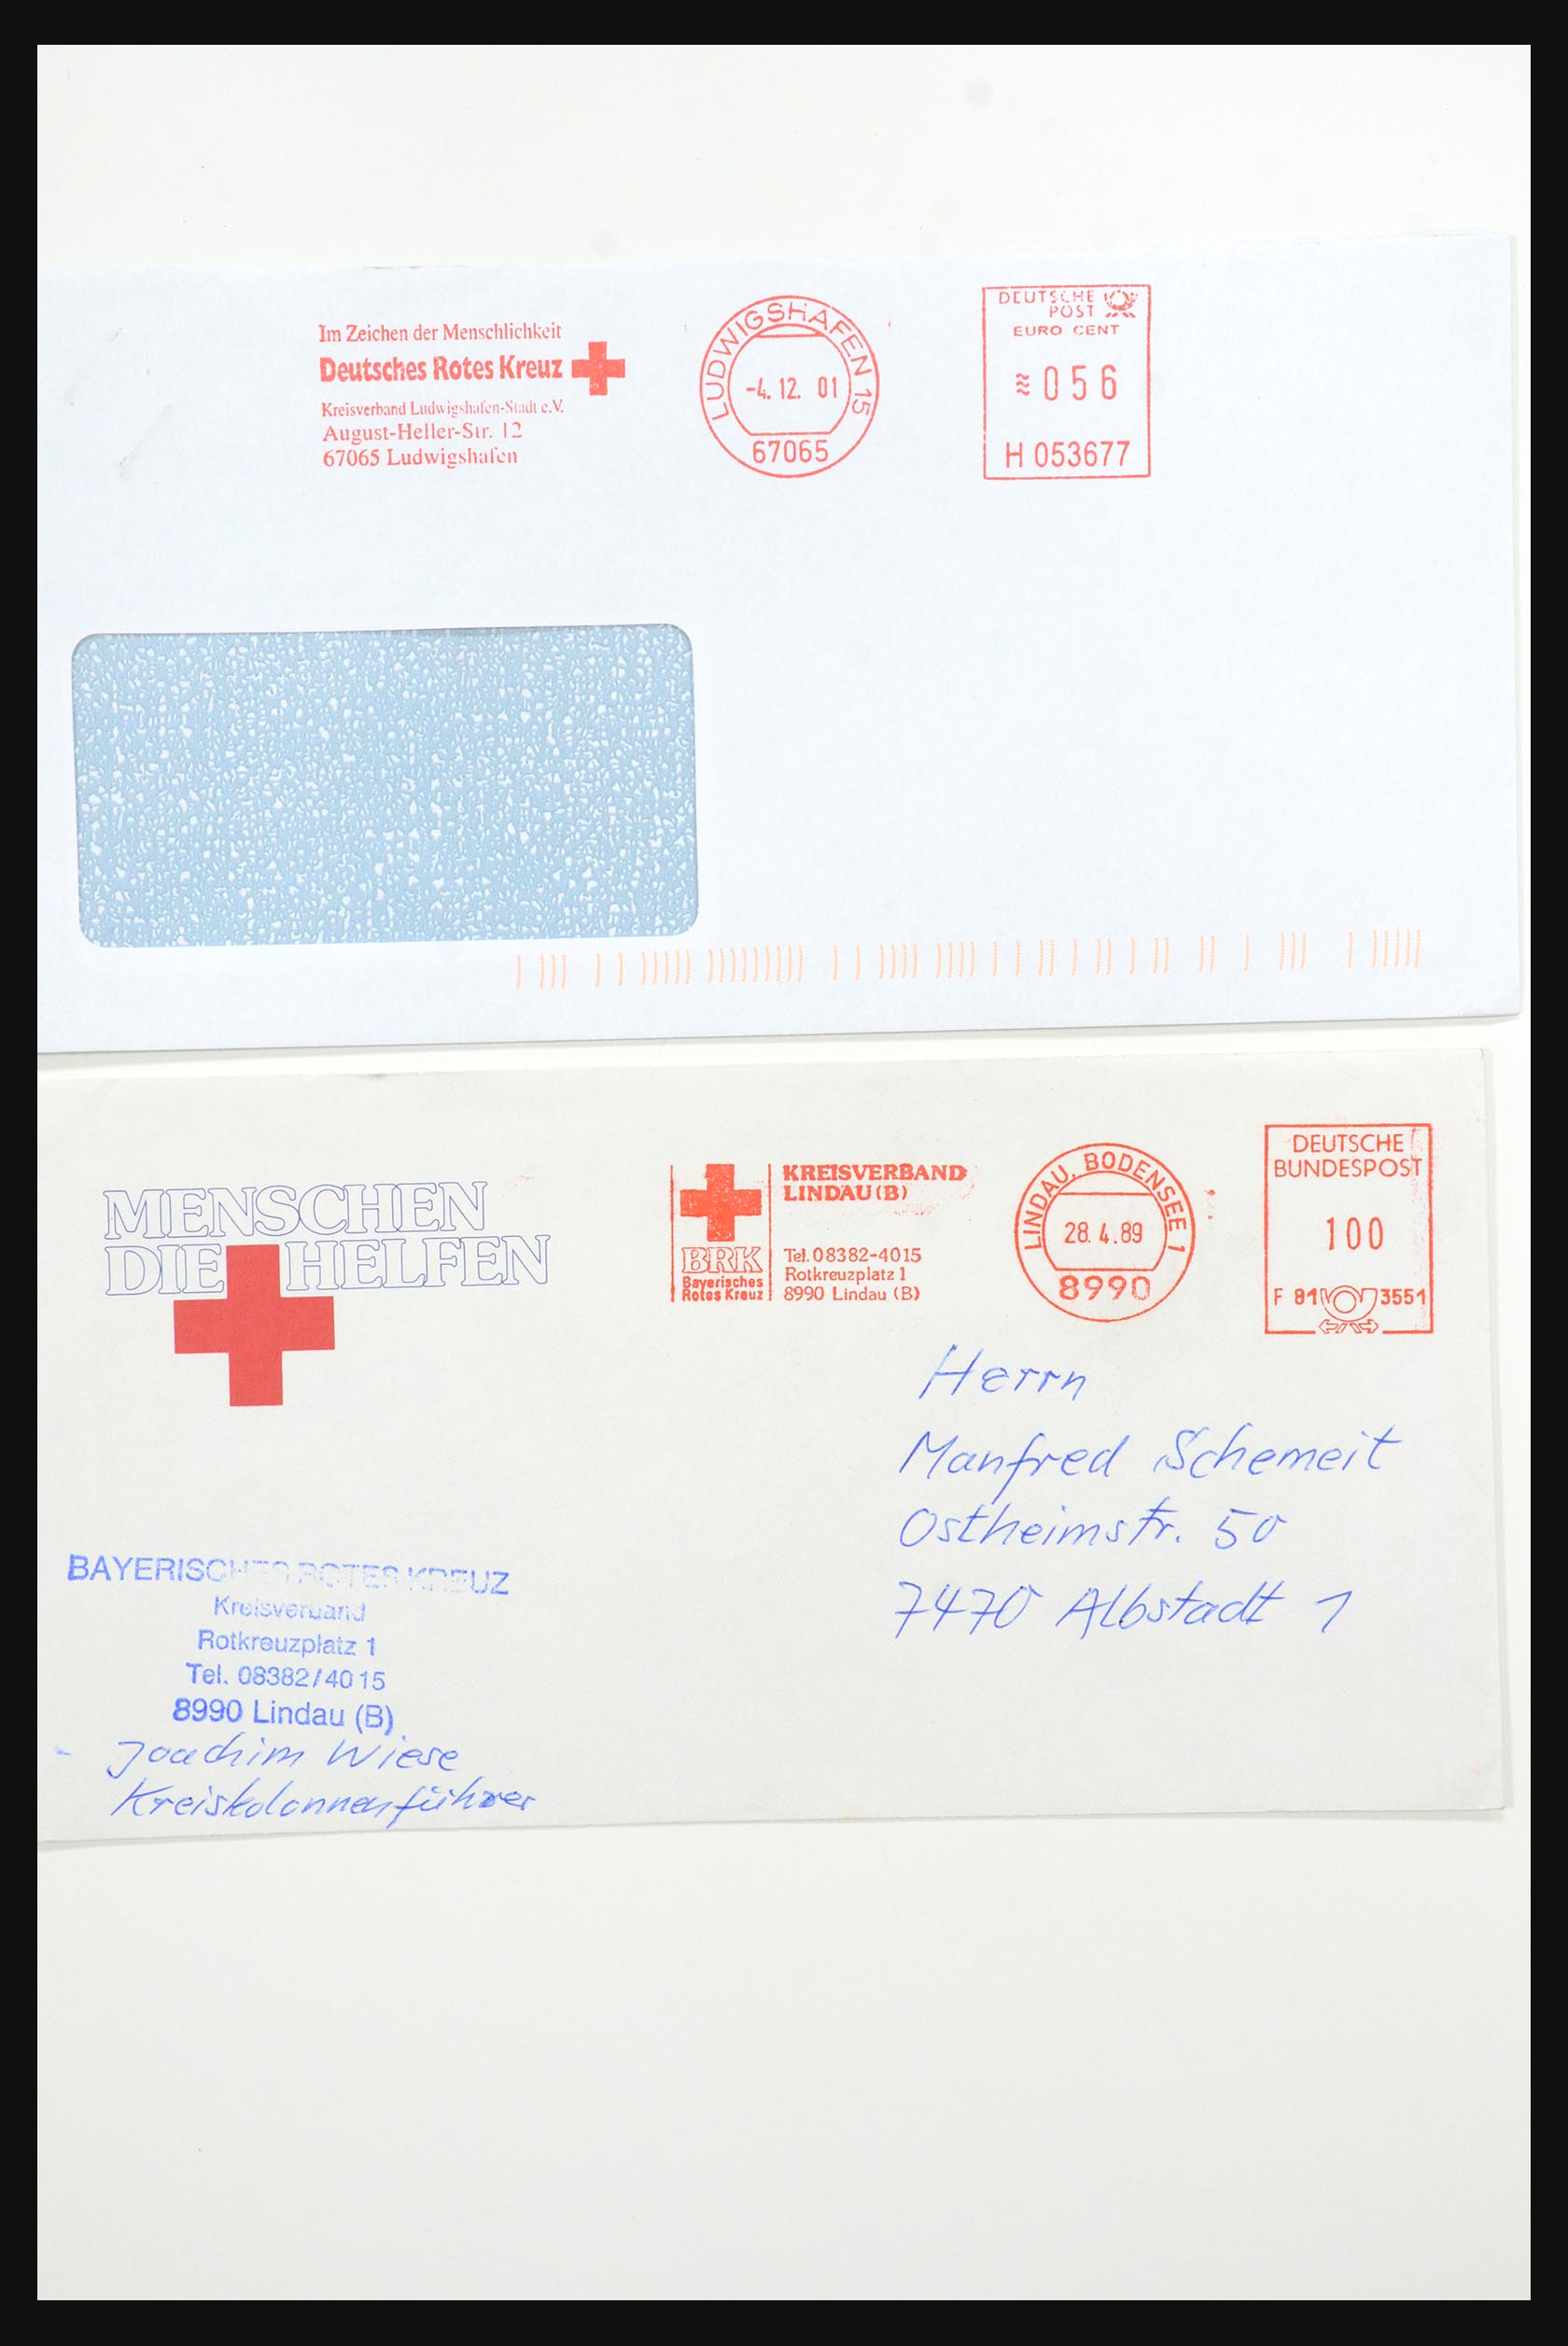 31365 1078 - 31365 Rode kruis brieven 1905-1975.